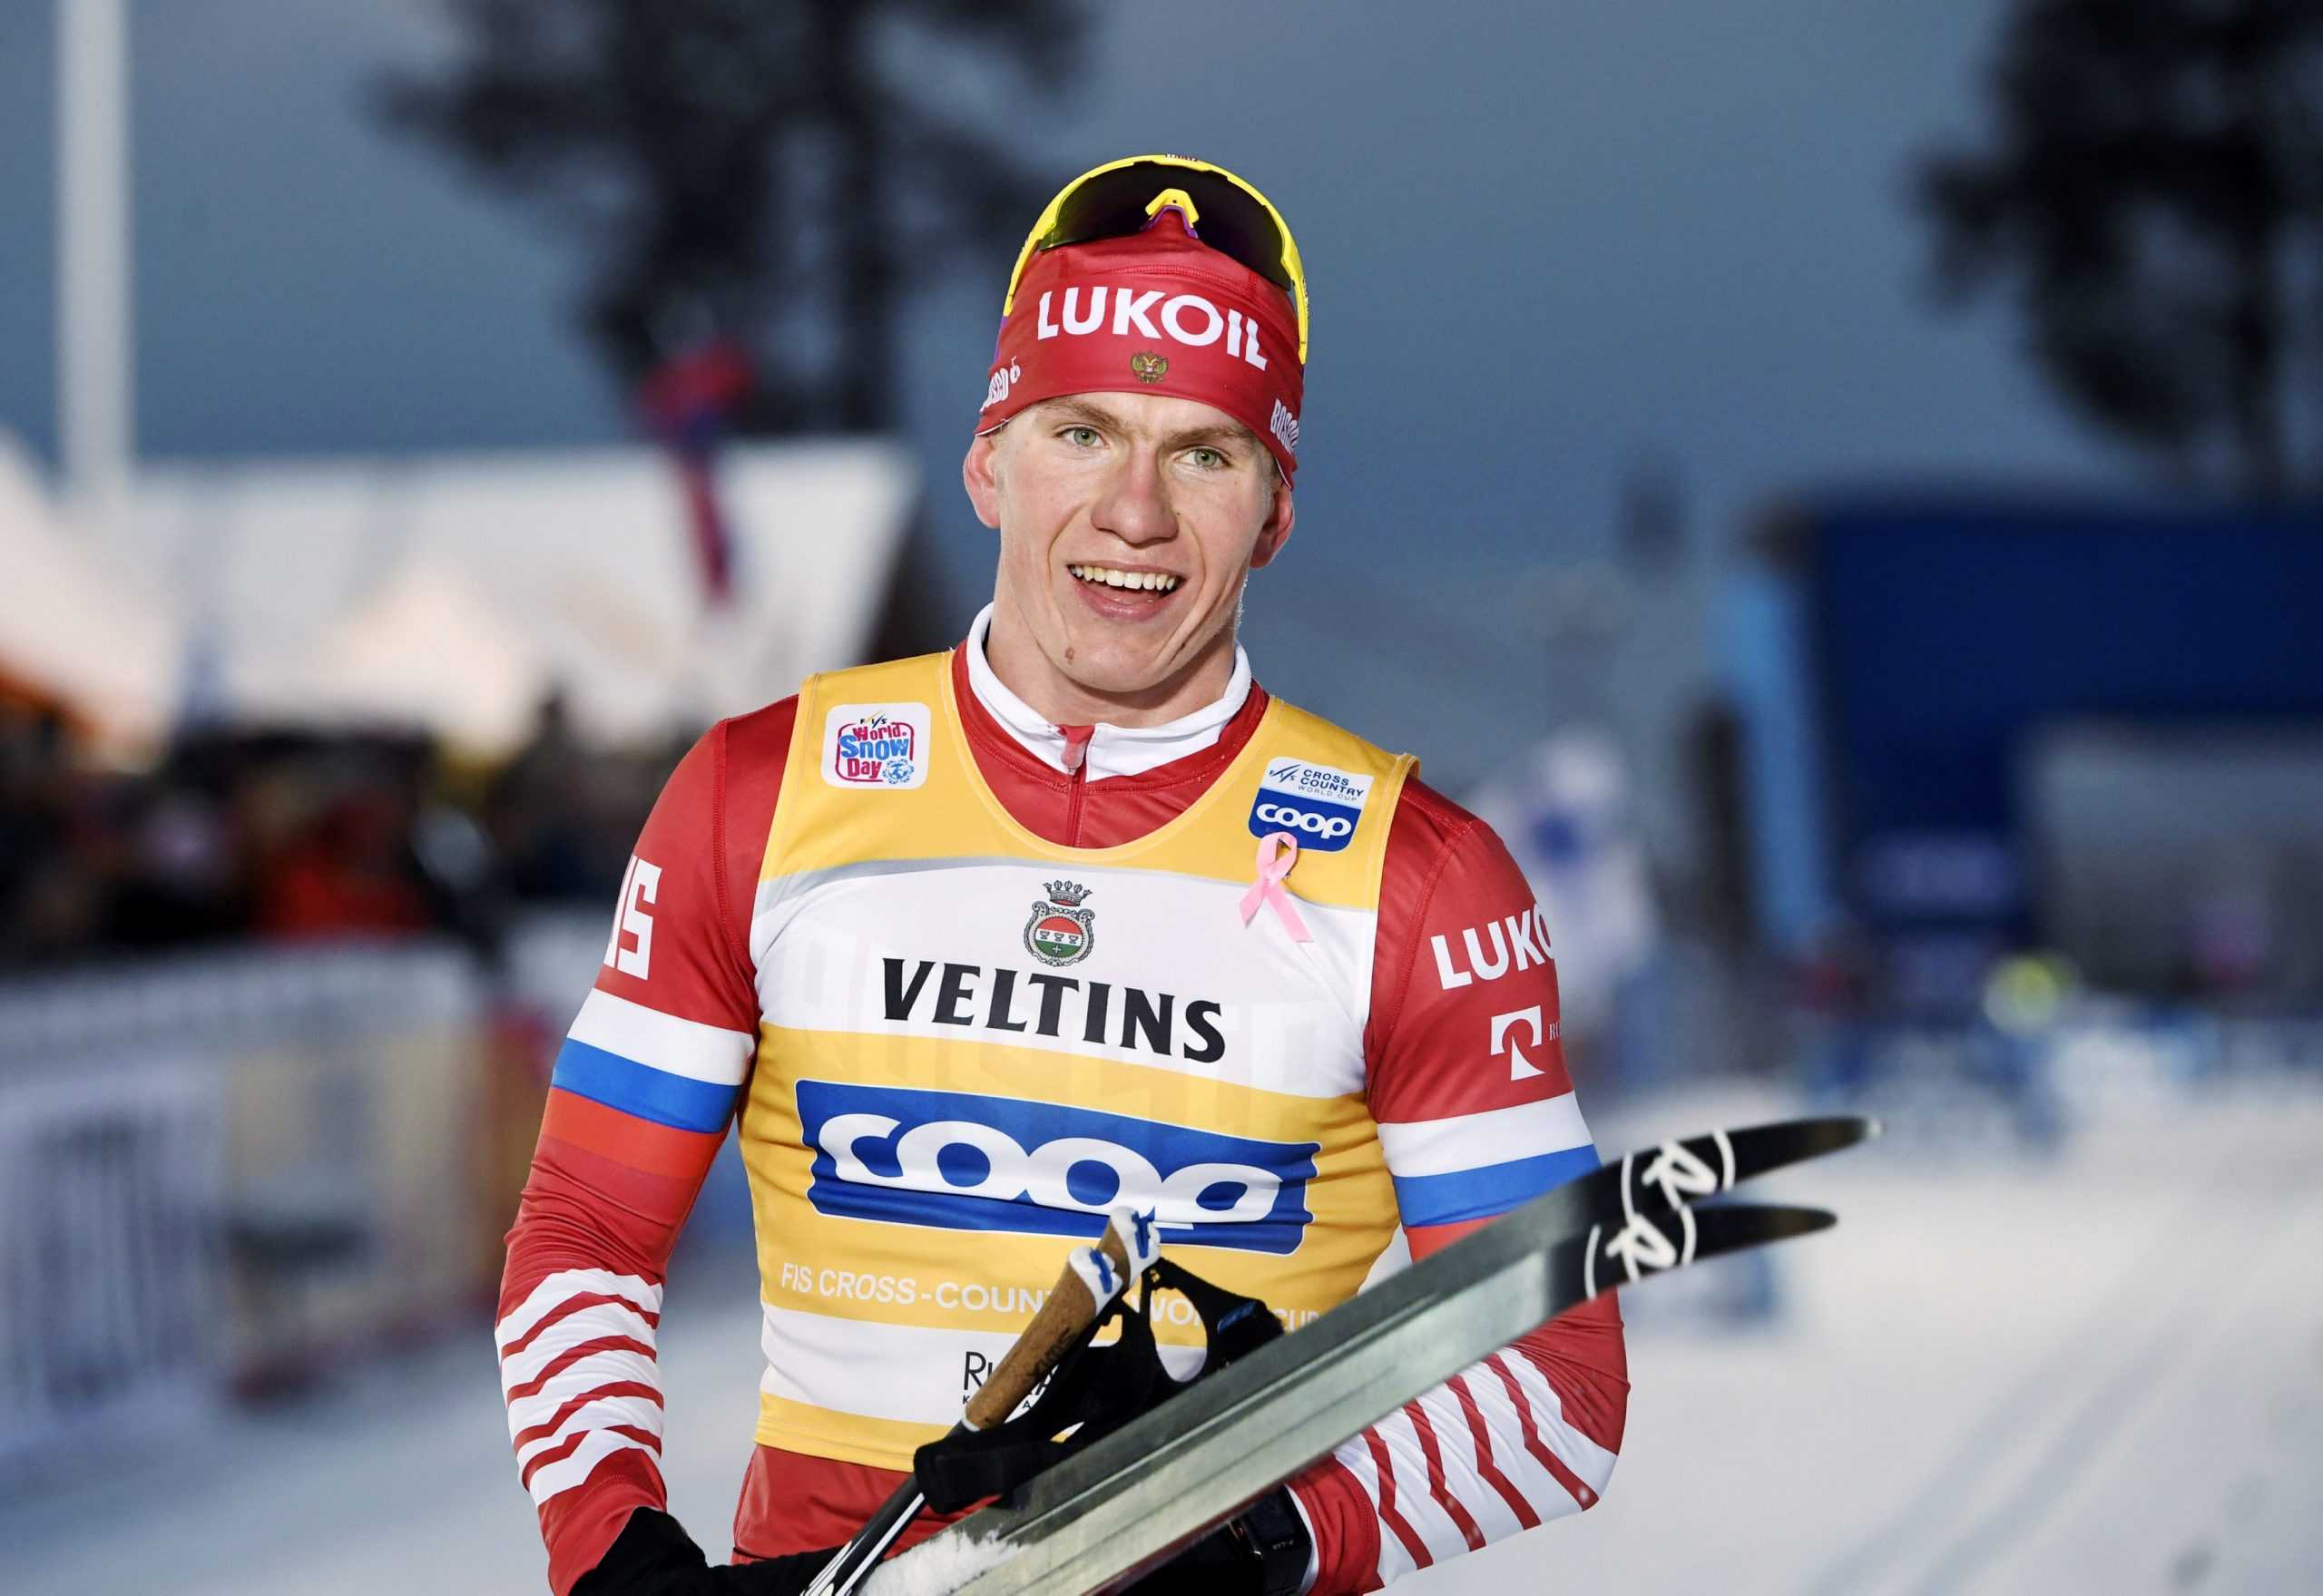 Александр Большунов завоевал больше всего наград на ЧМ по лыжным видам спорта